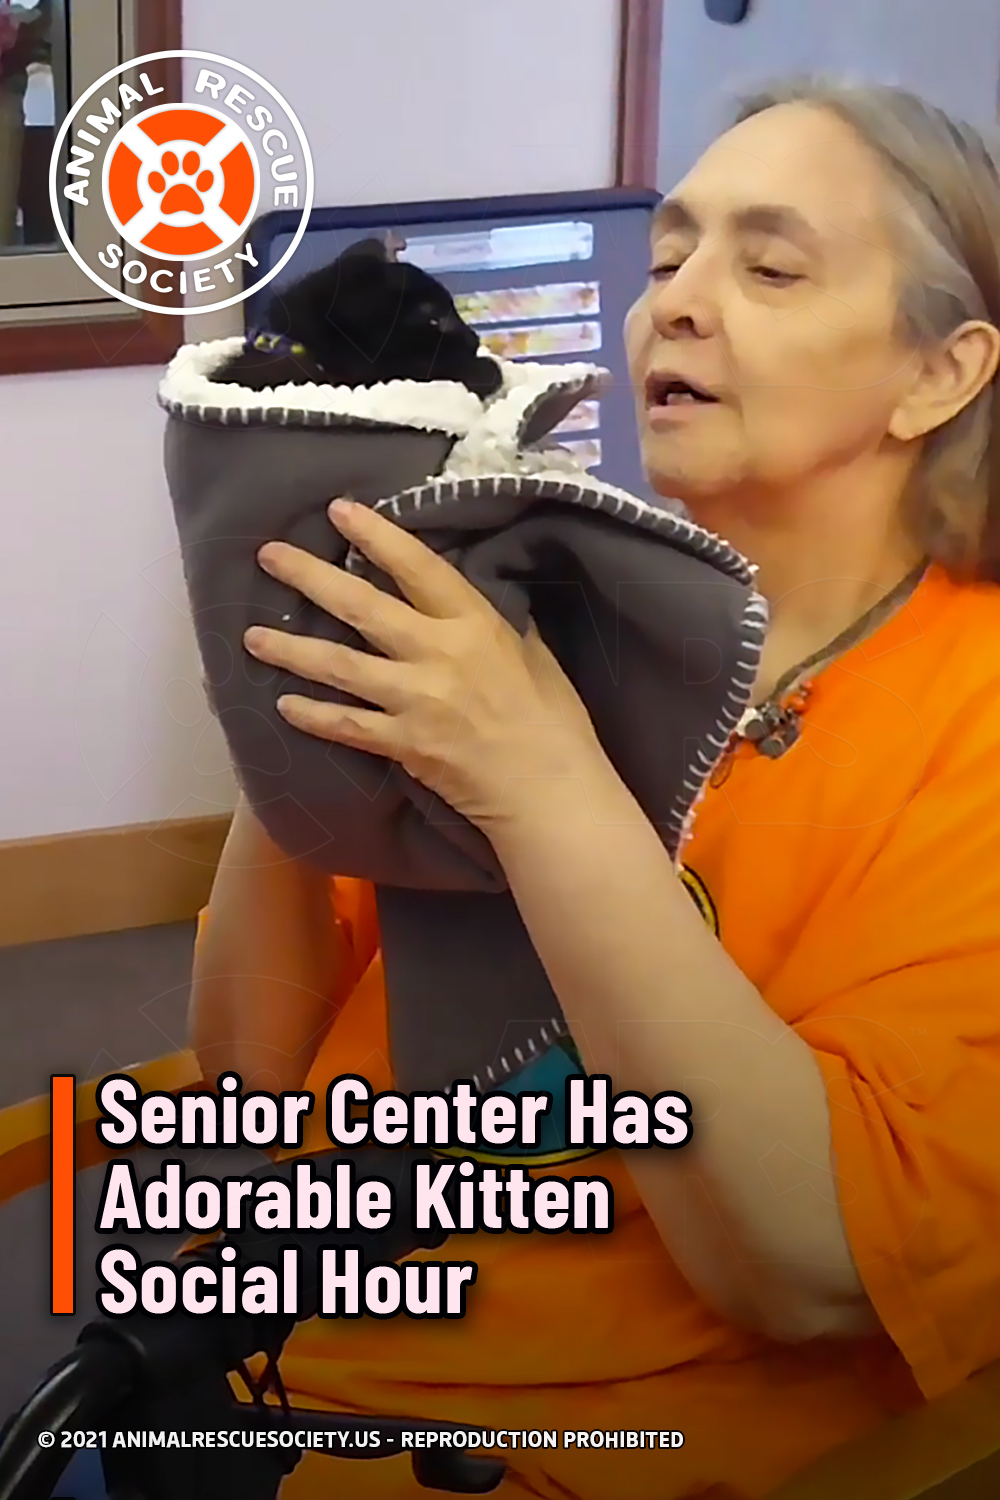 Senior Center Has Adorable Kitten Social Hour